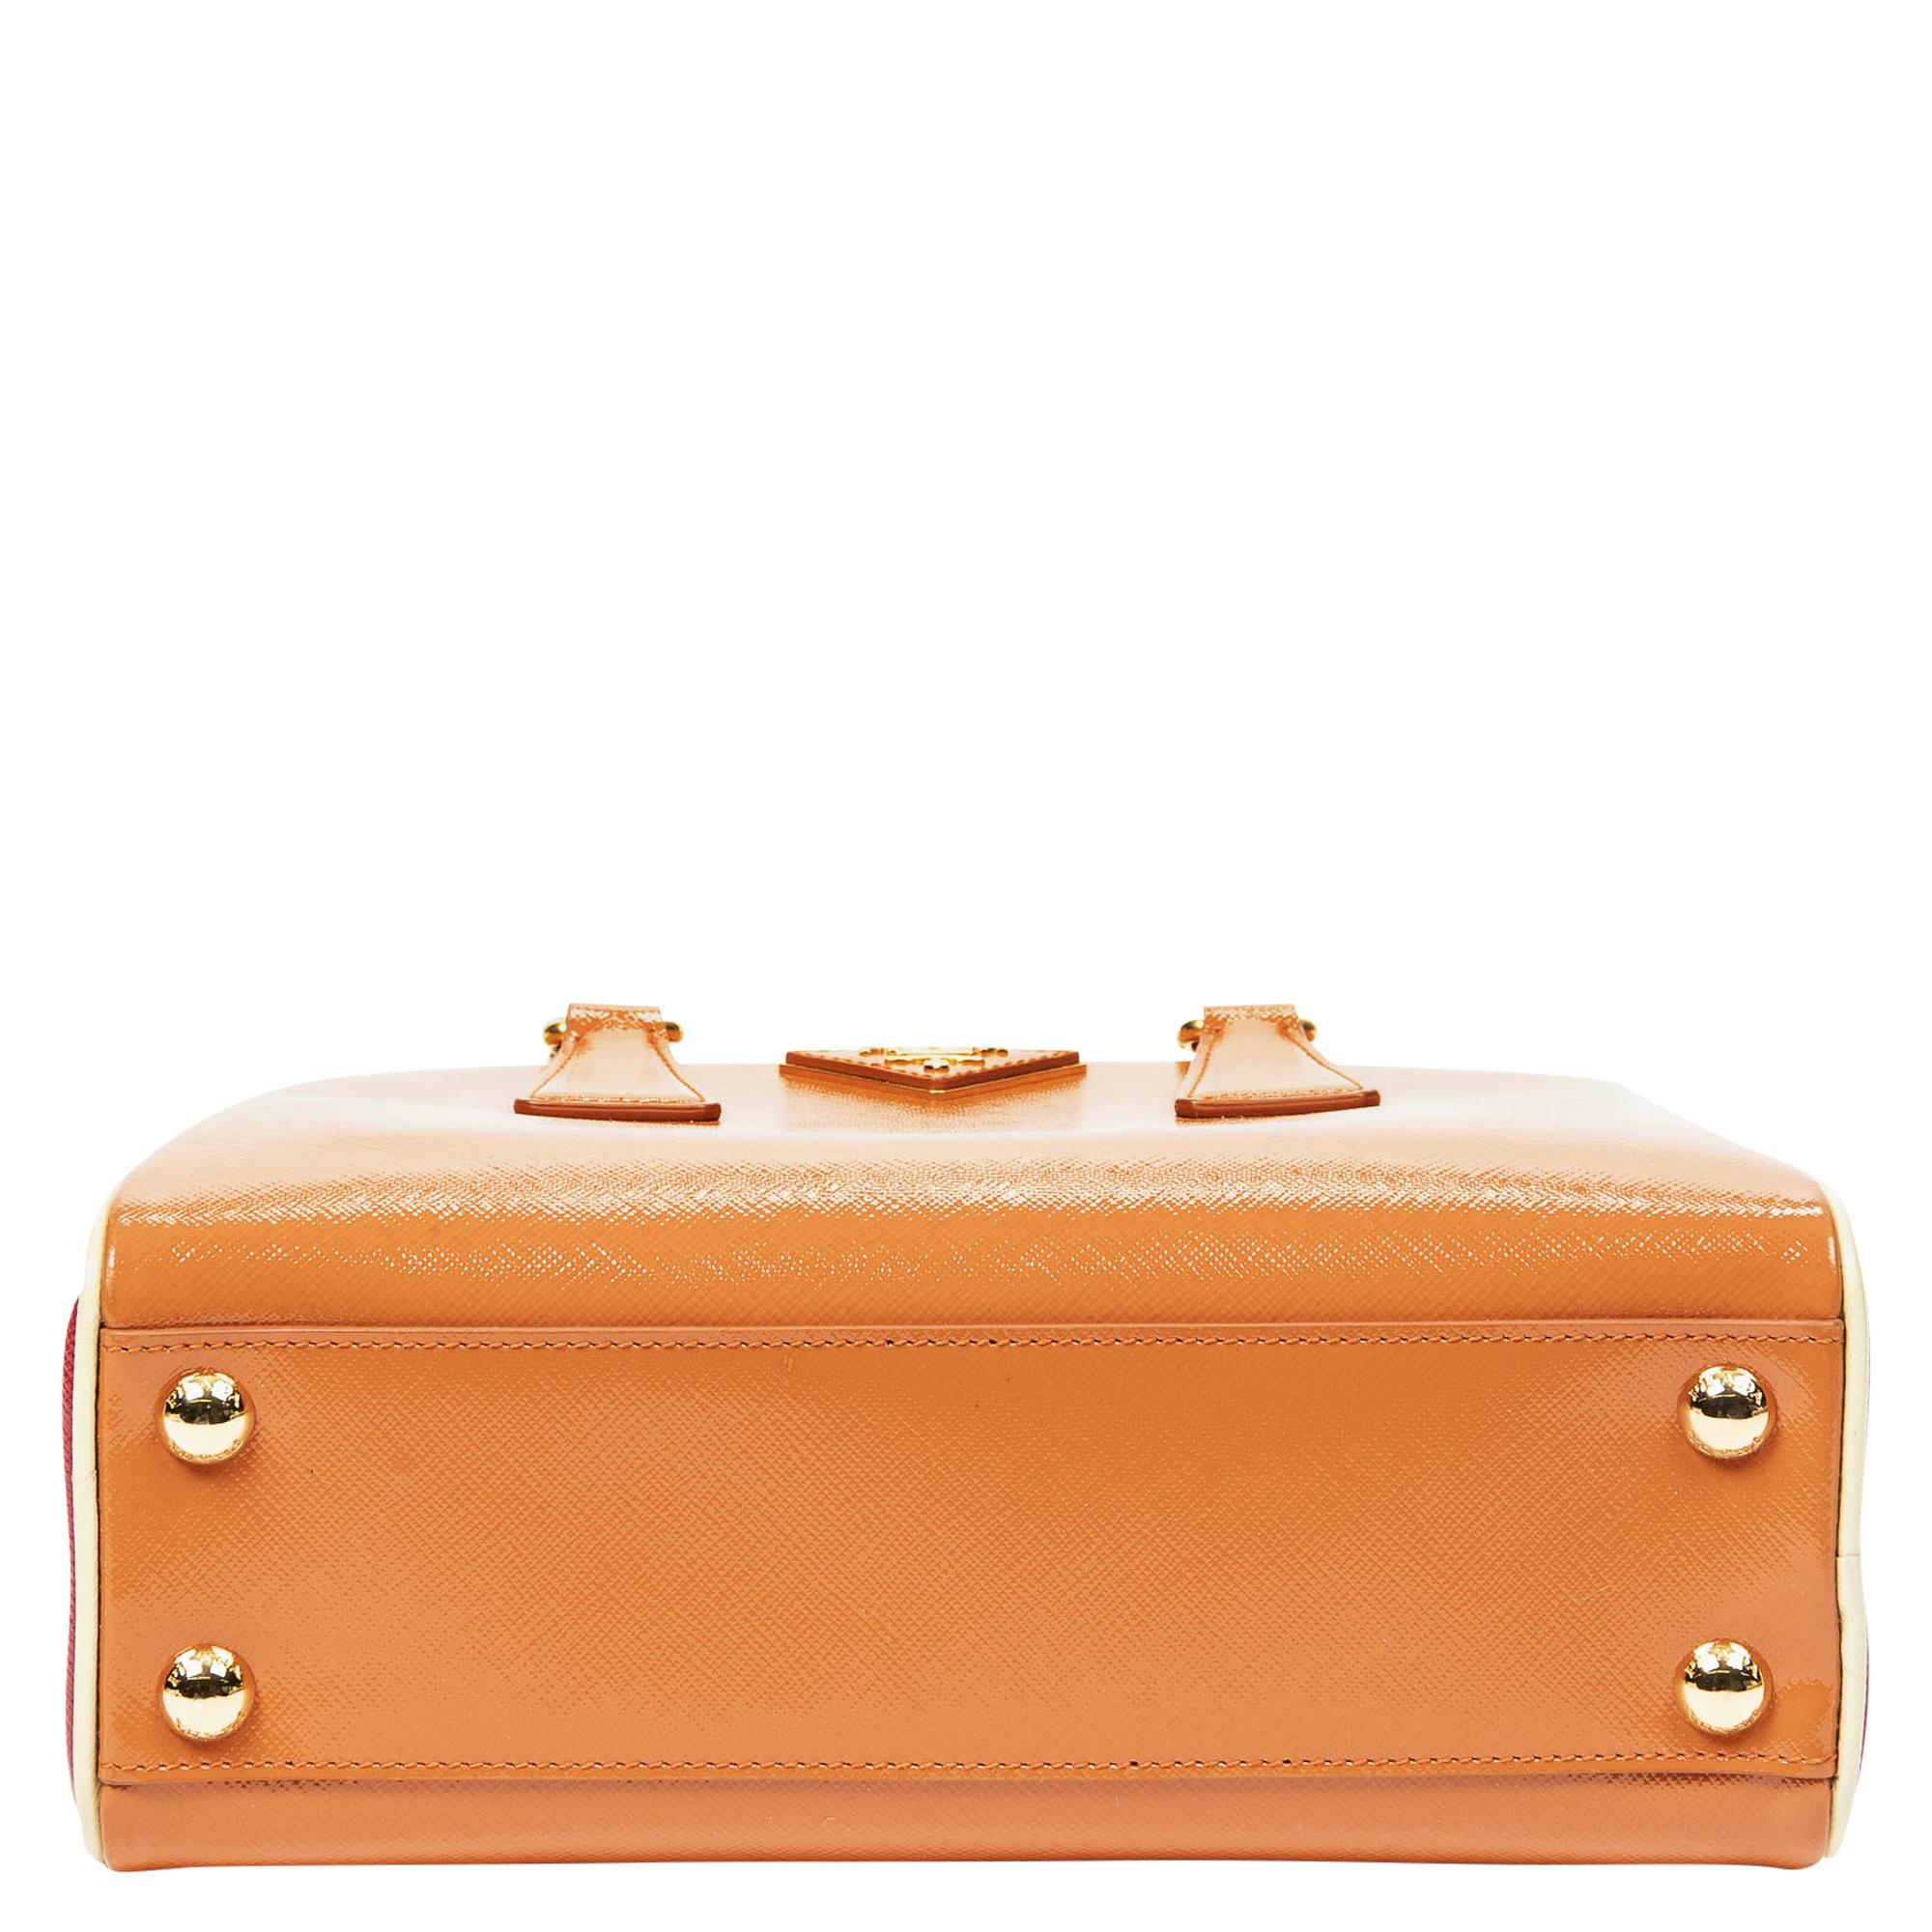 Women's or Men's Prada Limited Edition Orange Frame Bag For Sale